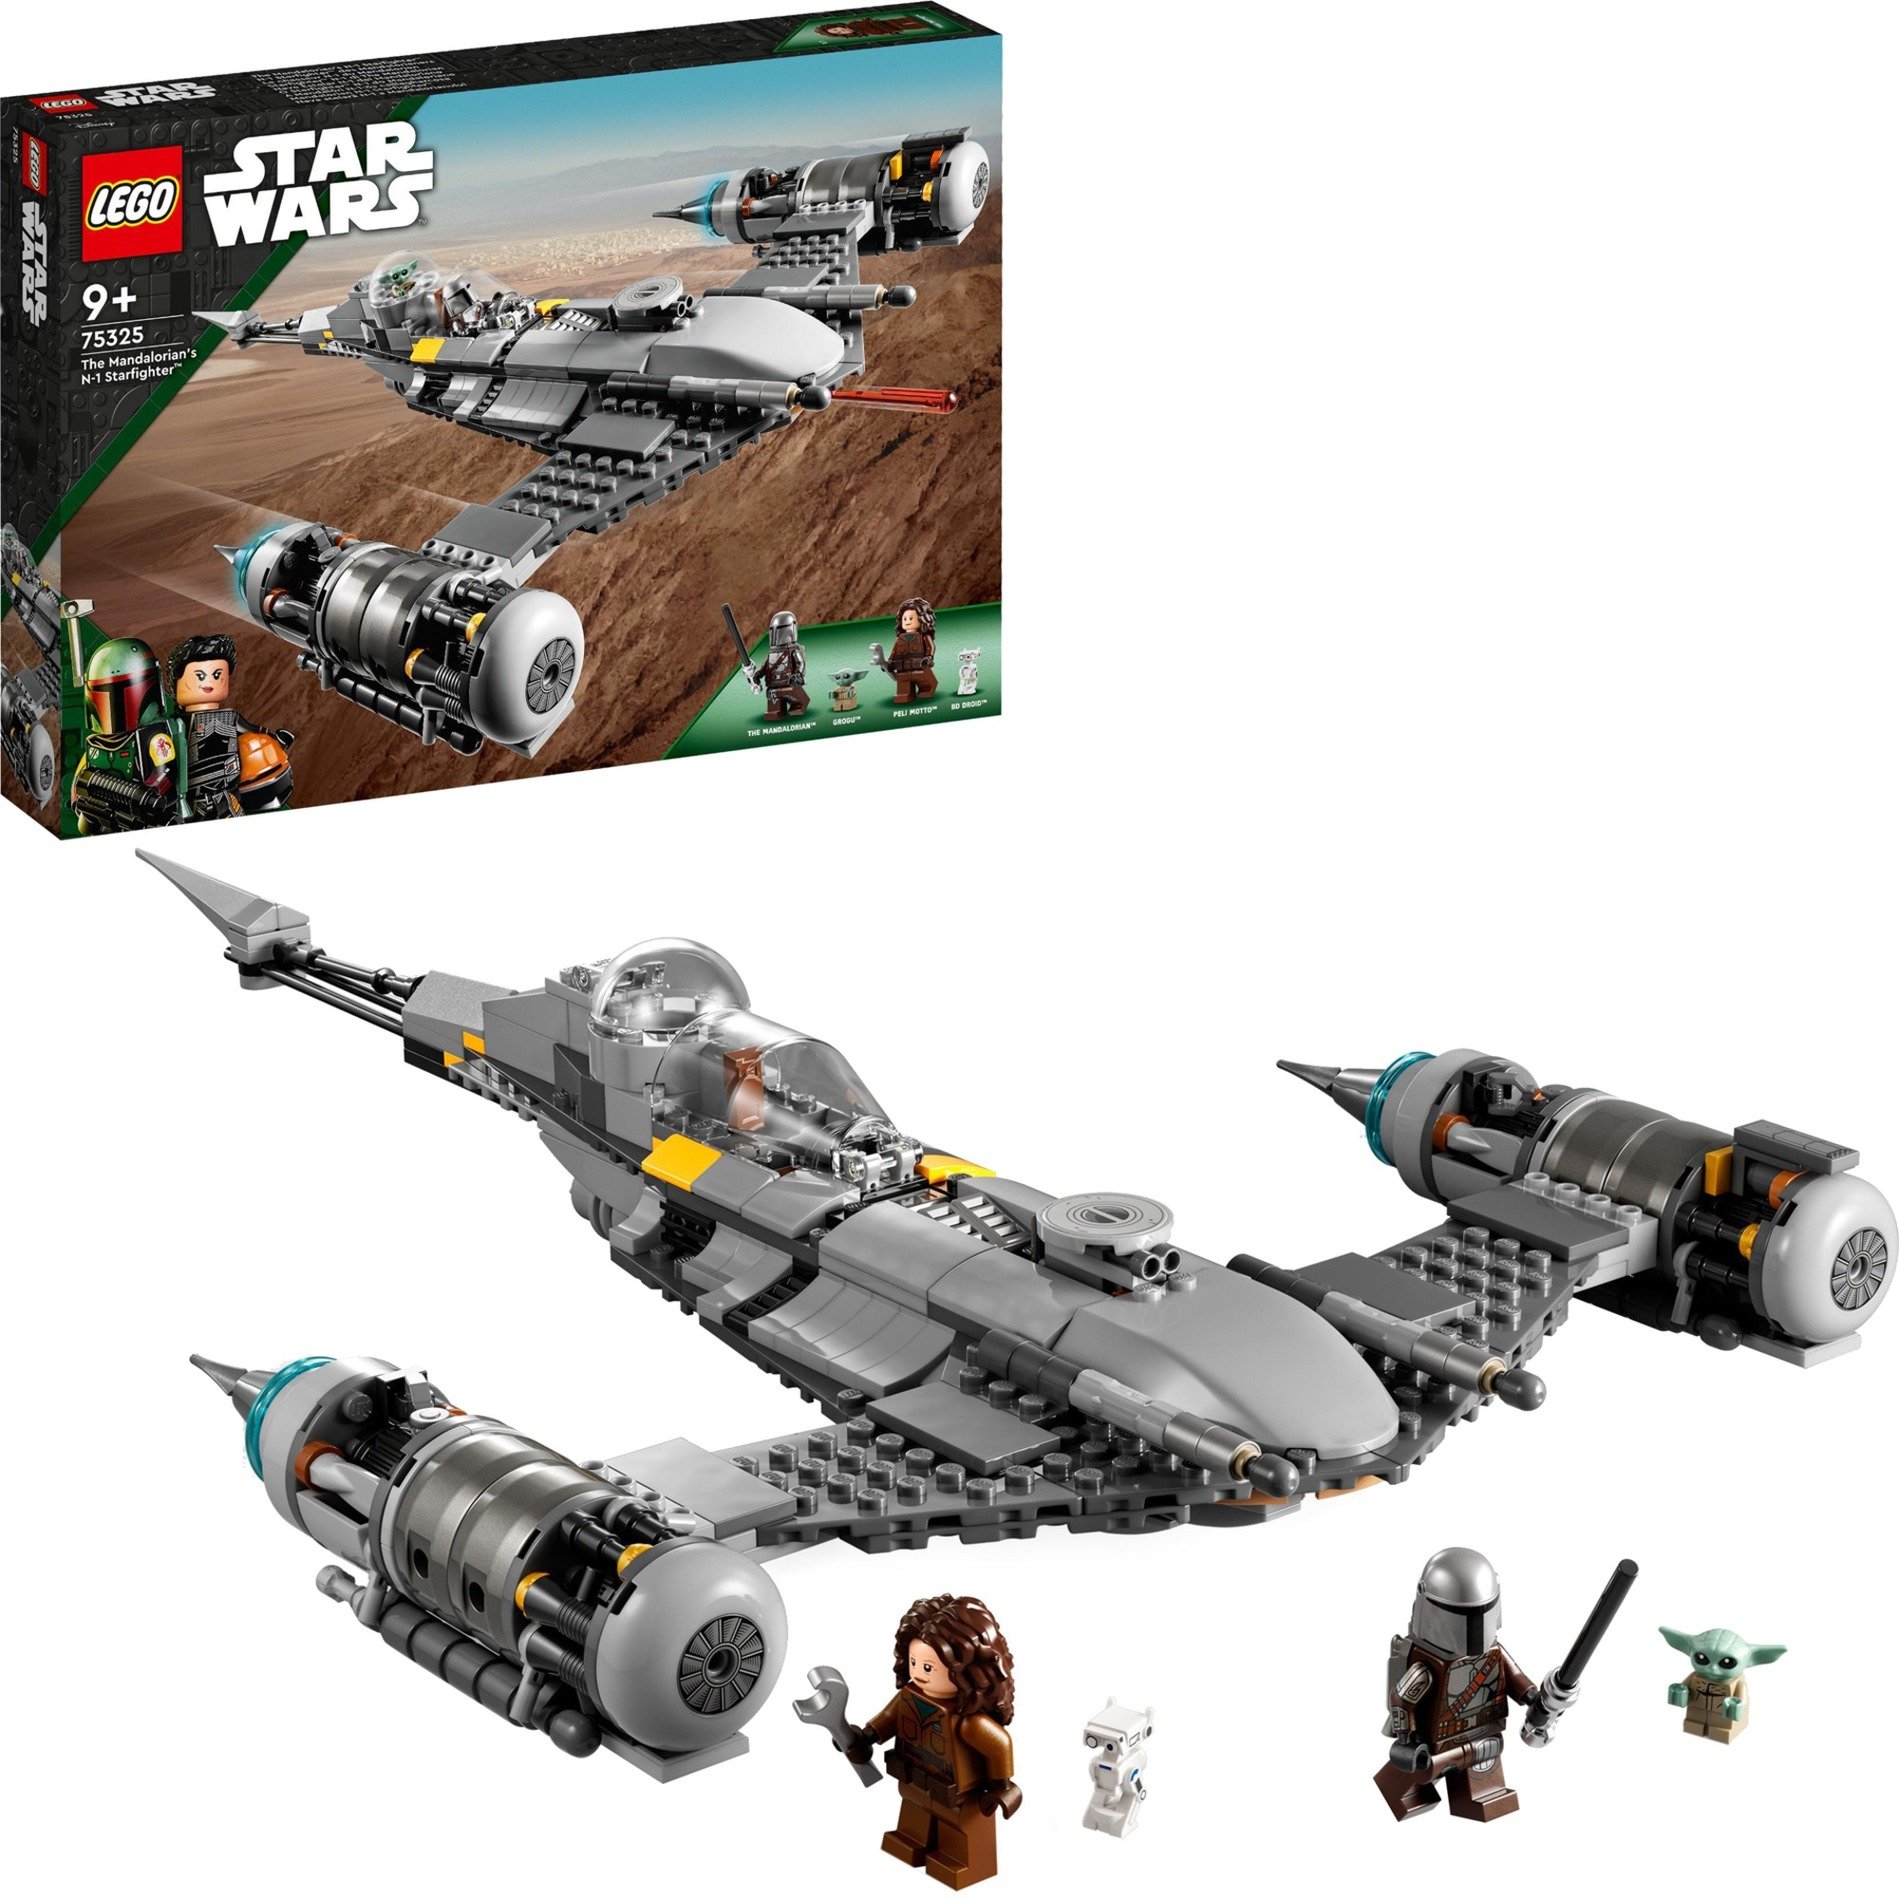 75325 Star Wars Der N-1 Starfighter des Mandalorianers, Konstruktionsspielzeug von Lego